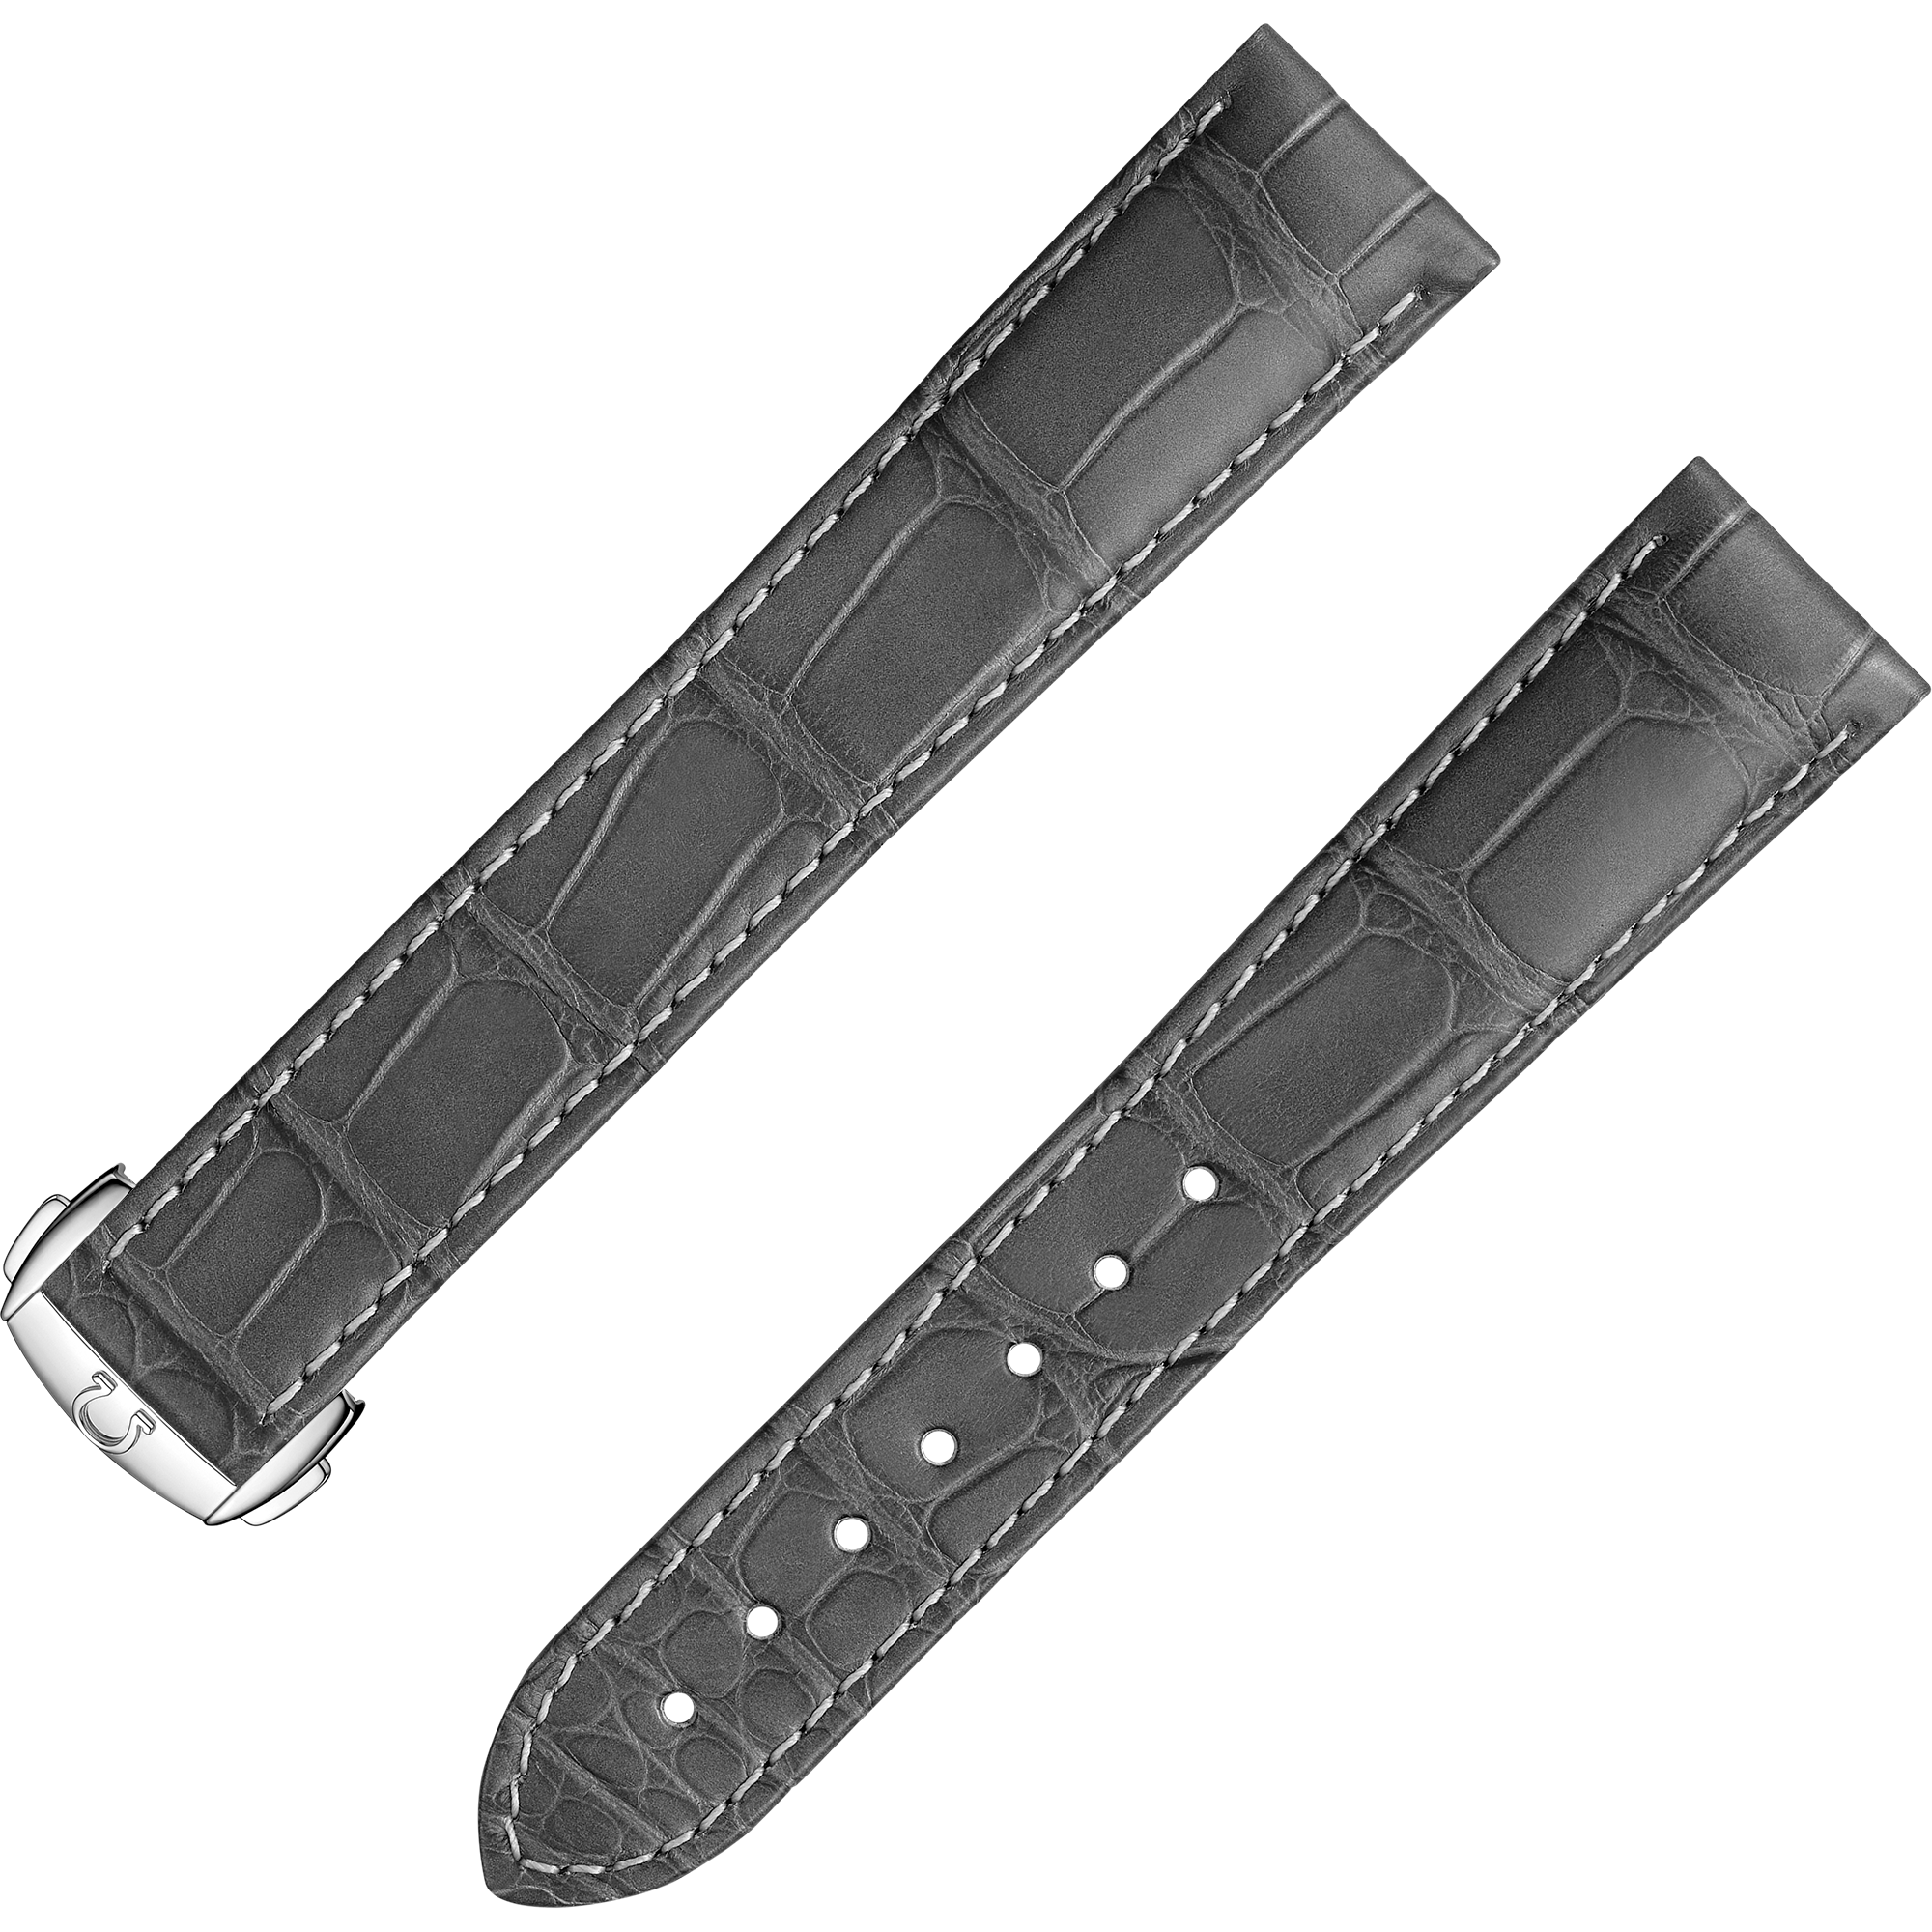 Two-piece strap - Grey alligator leather strap with foldover clasp - 032CUZ007463W